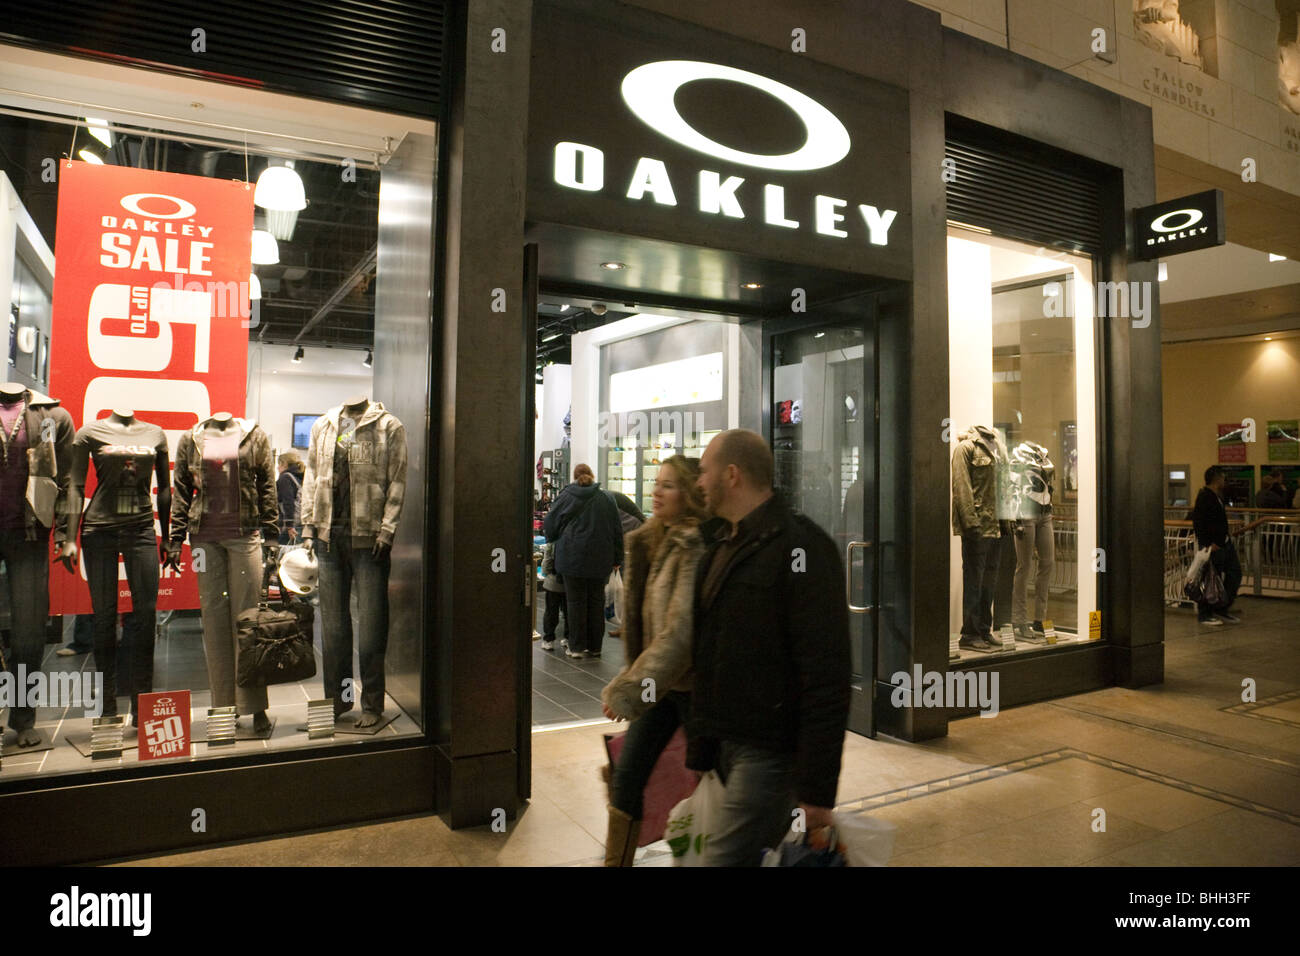 Käufer zu Fuß vor einer Oakley Bekleidungsgeschäft Bluewater Shopping-Mall, Kent, UK Stockfoto